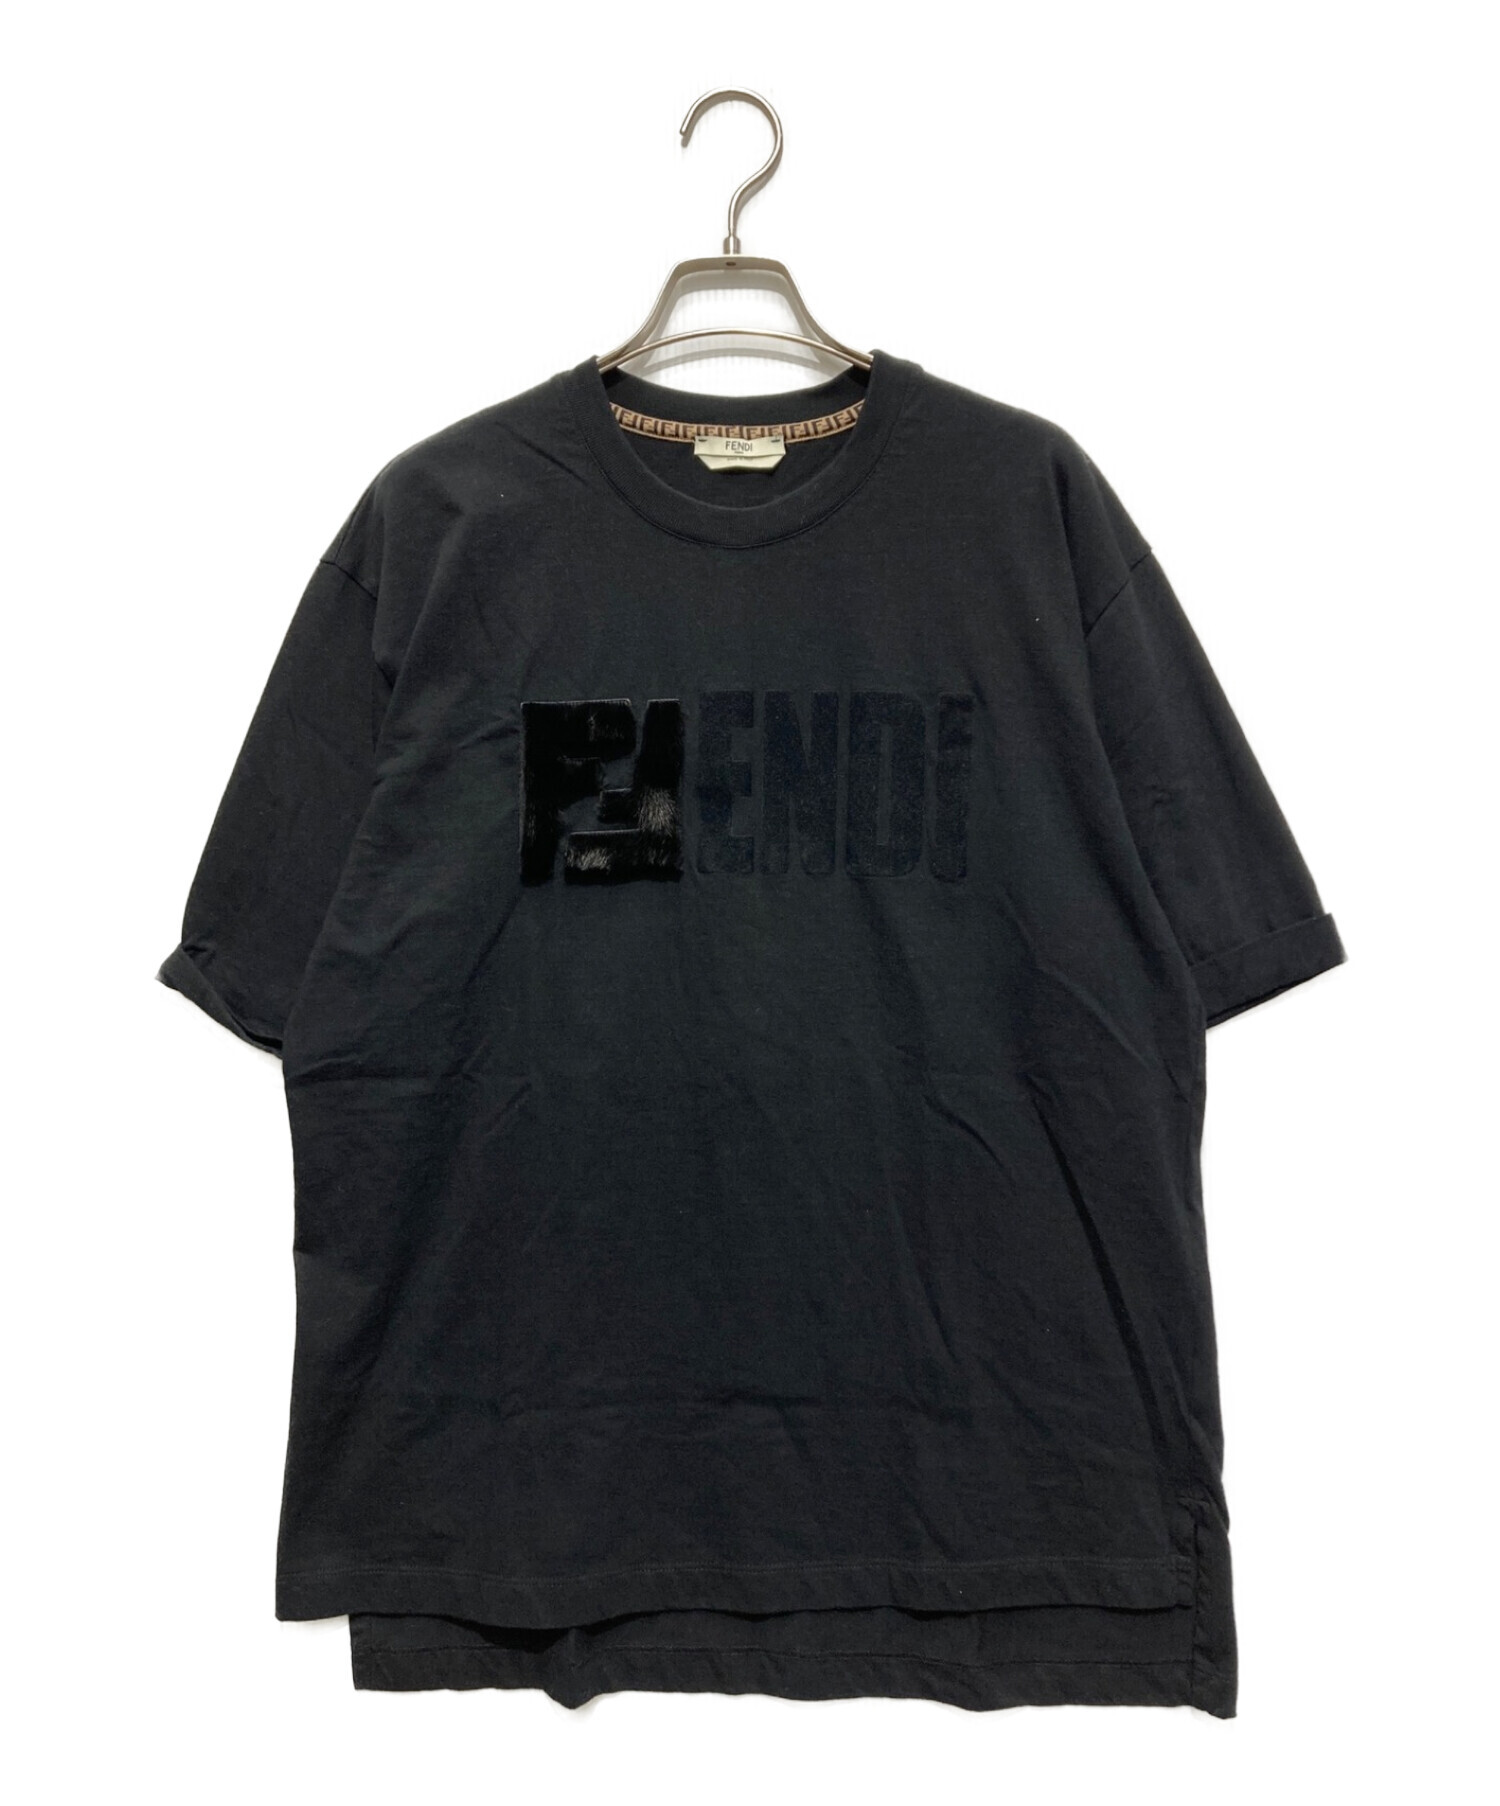 FENDI (フェンディ) フロントファーFFロゴ入りTシャツ ブラック サイズ:SIZE M